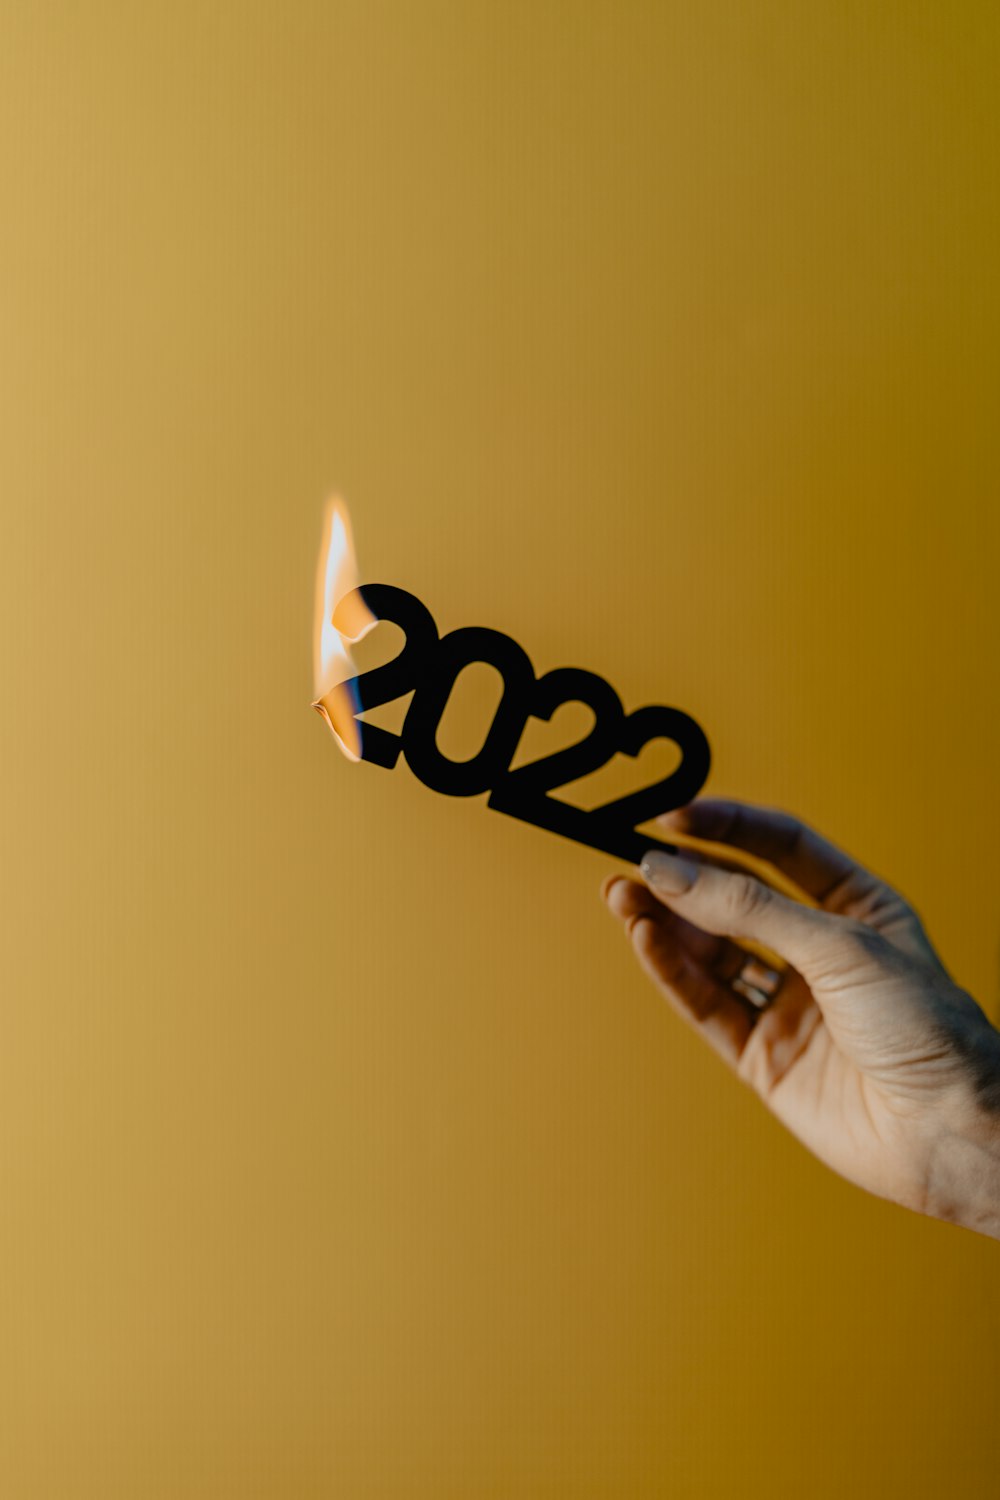 Una mano sosteniendo una cerilla encendida con los números 2012 en ella